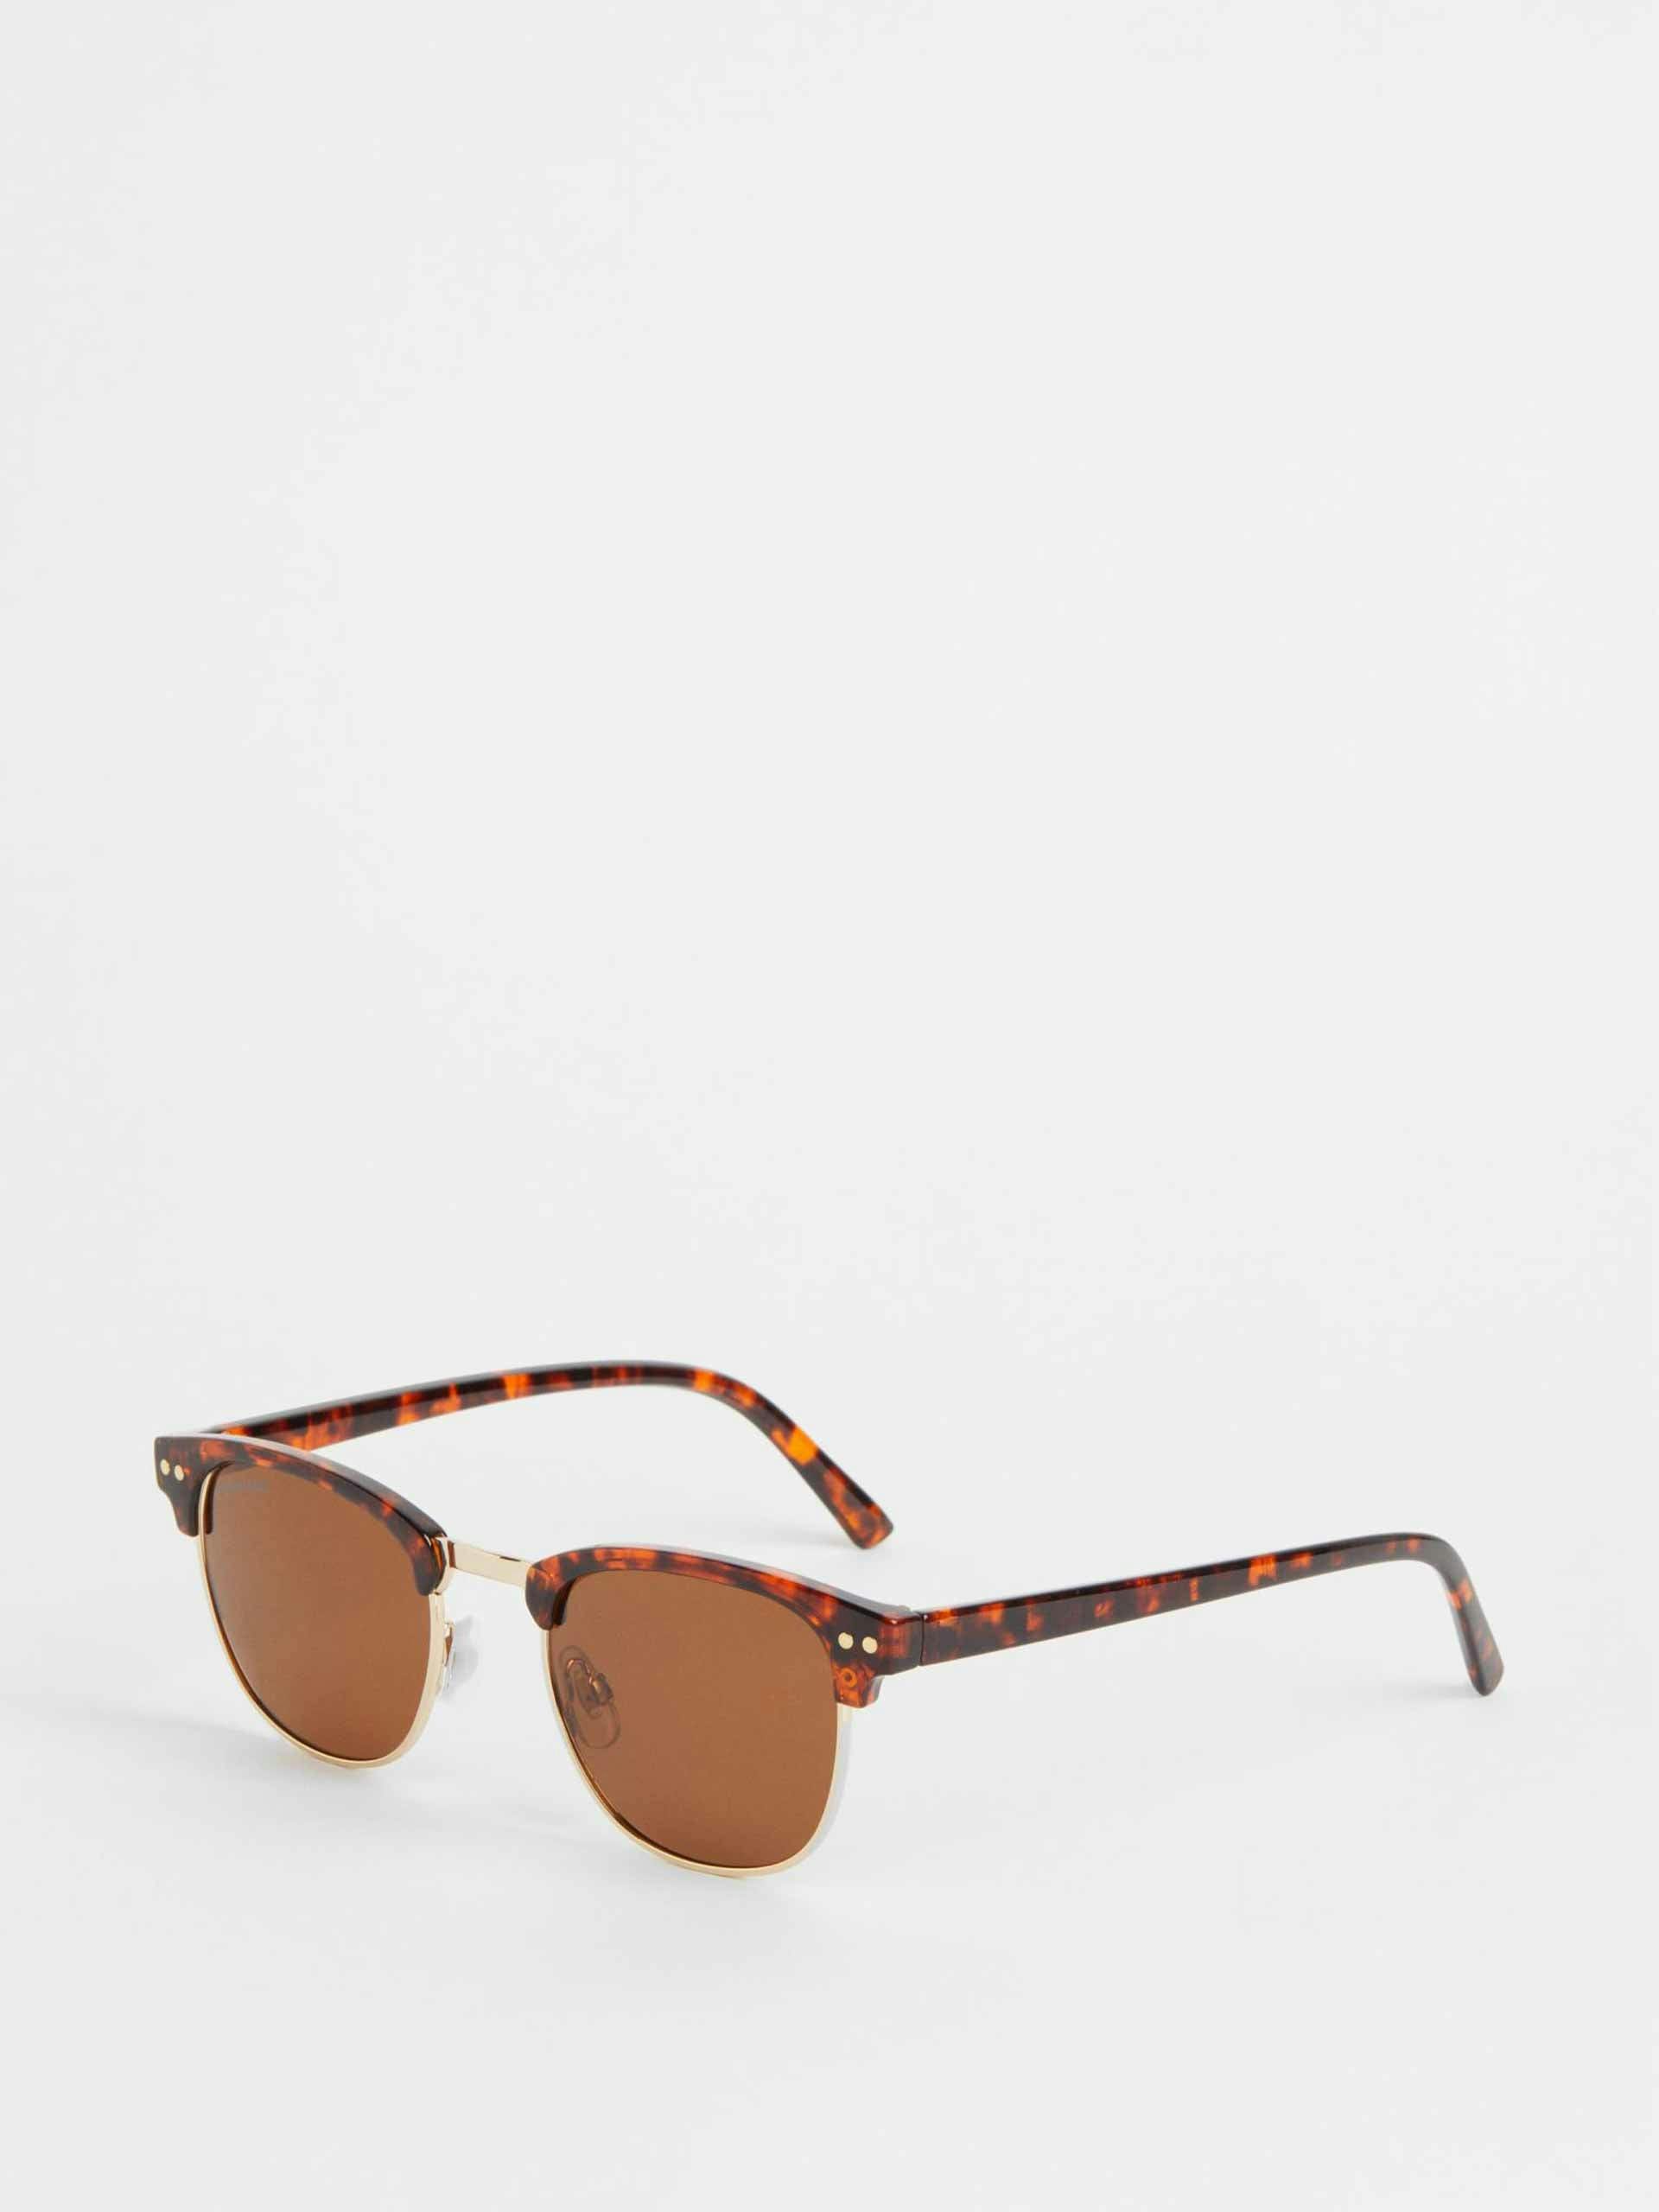 Brown polarised sunglasses